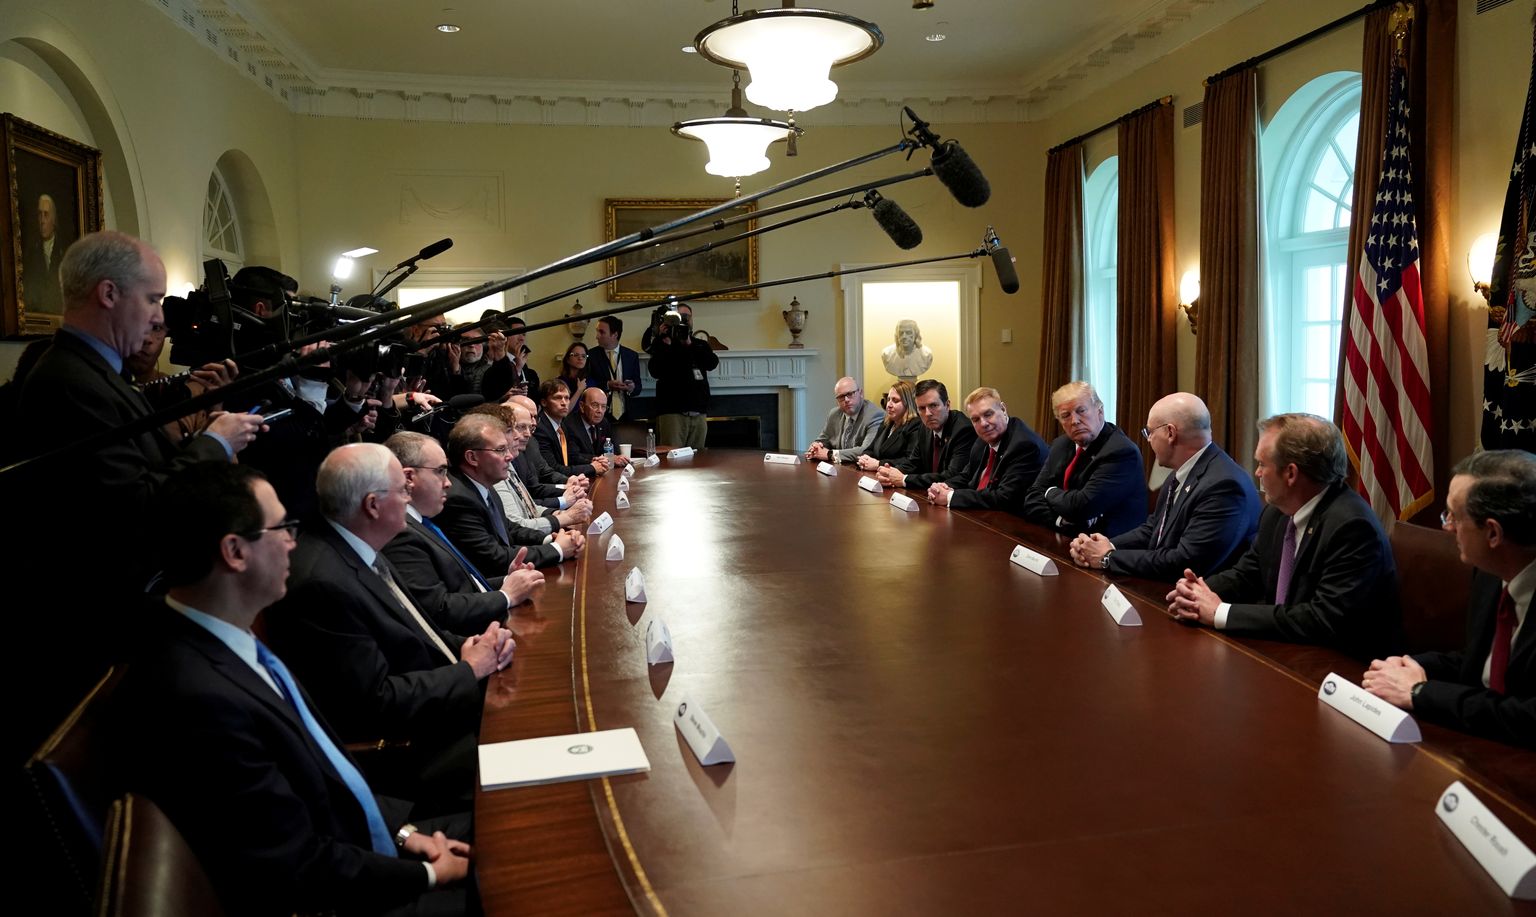 Donald Trumpi kohtumine tööstusjuhtidega, kus ta teatas imporditollide kehtestamisest.